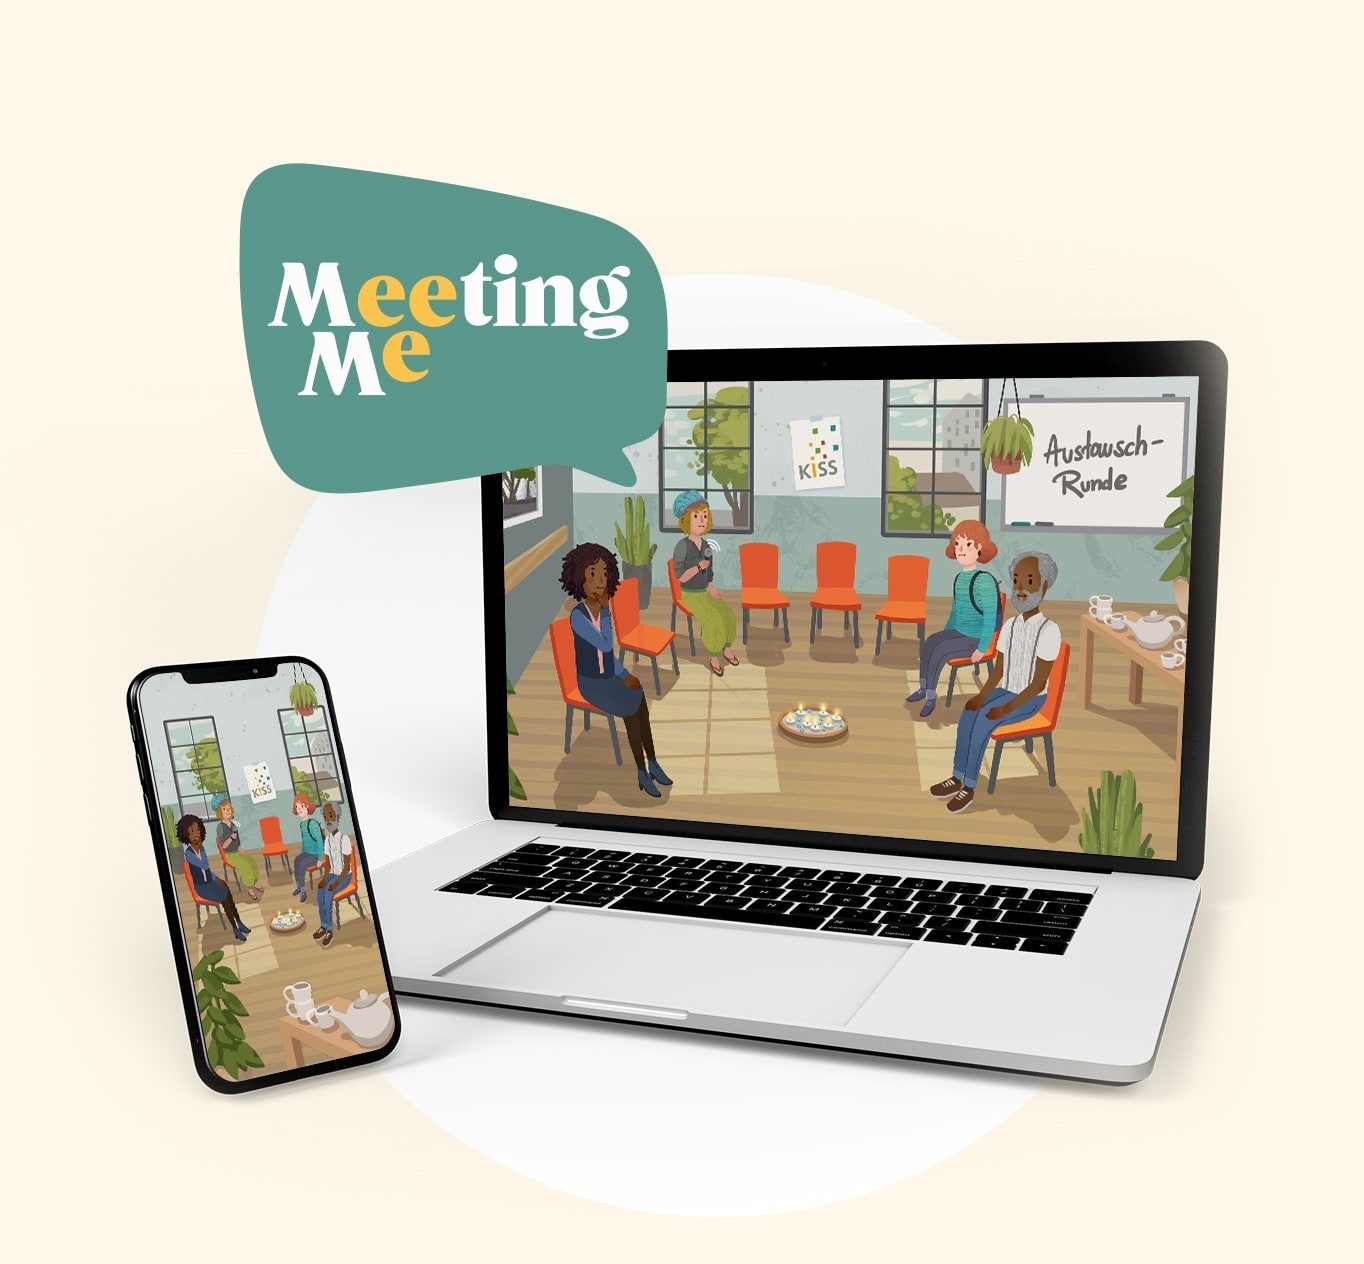 EIn Laptop und ein Smartphone, auf deren Bildschirmen jeweils ein gezeichneter Stuhlkreis mit vier Teilnehmer*innen zu sehen ist. Dazu der Text "Meeting Me".